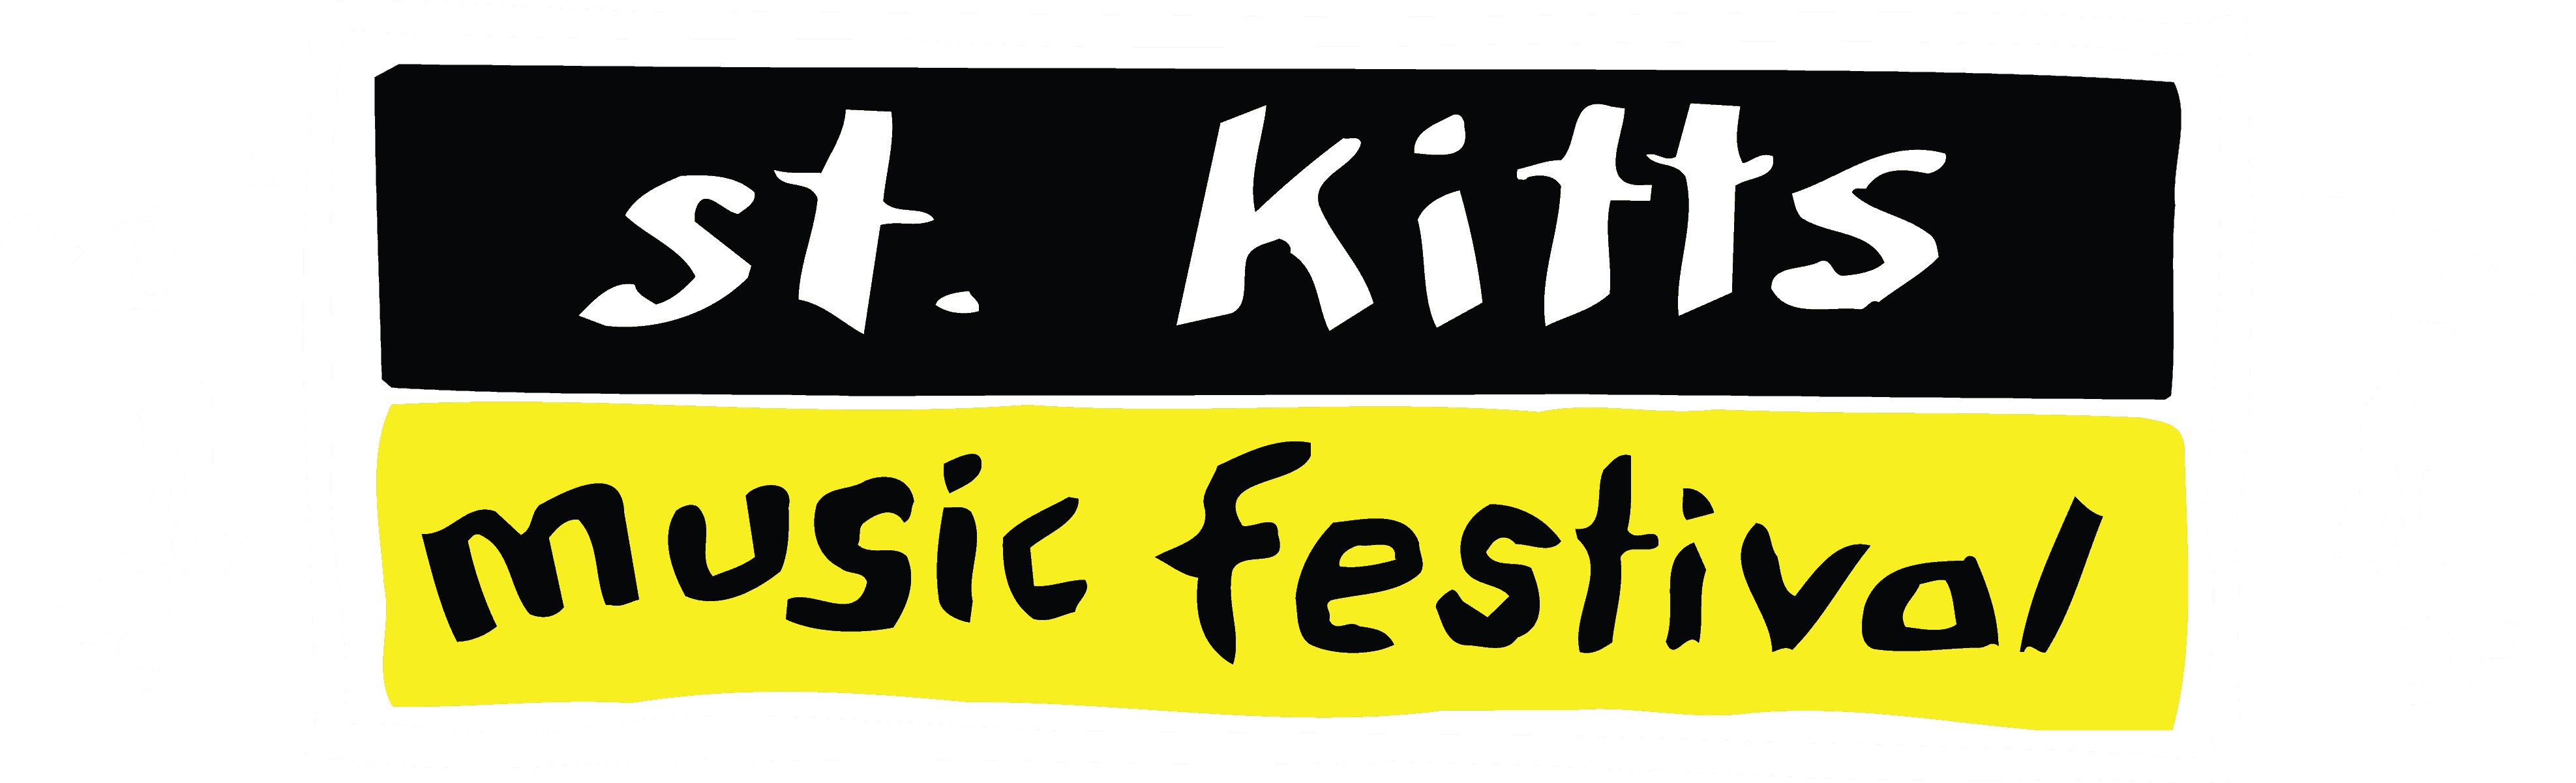 St Kitts Music Festival Logo PNG